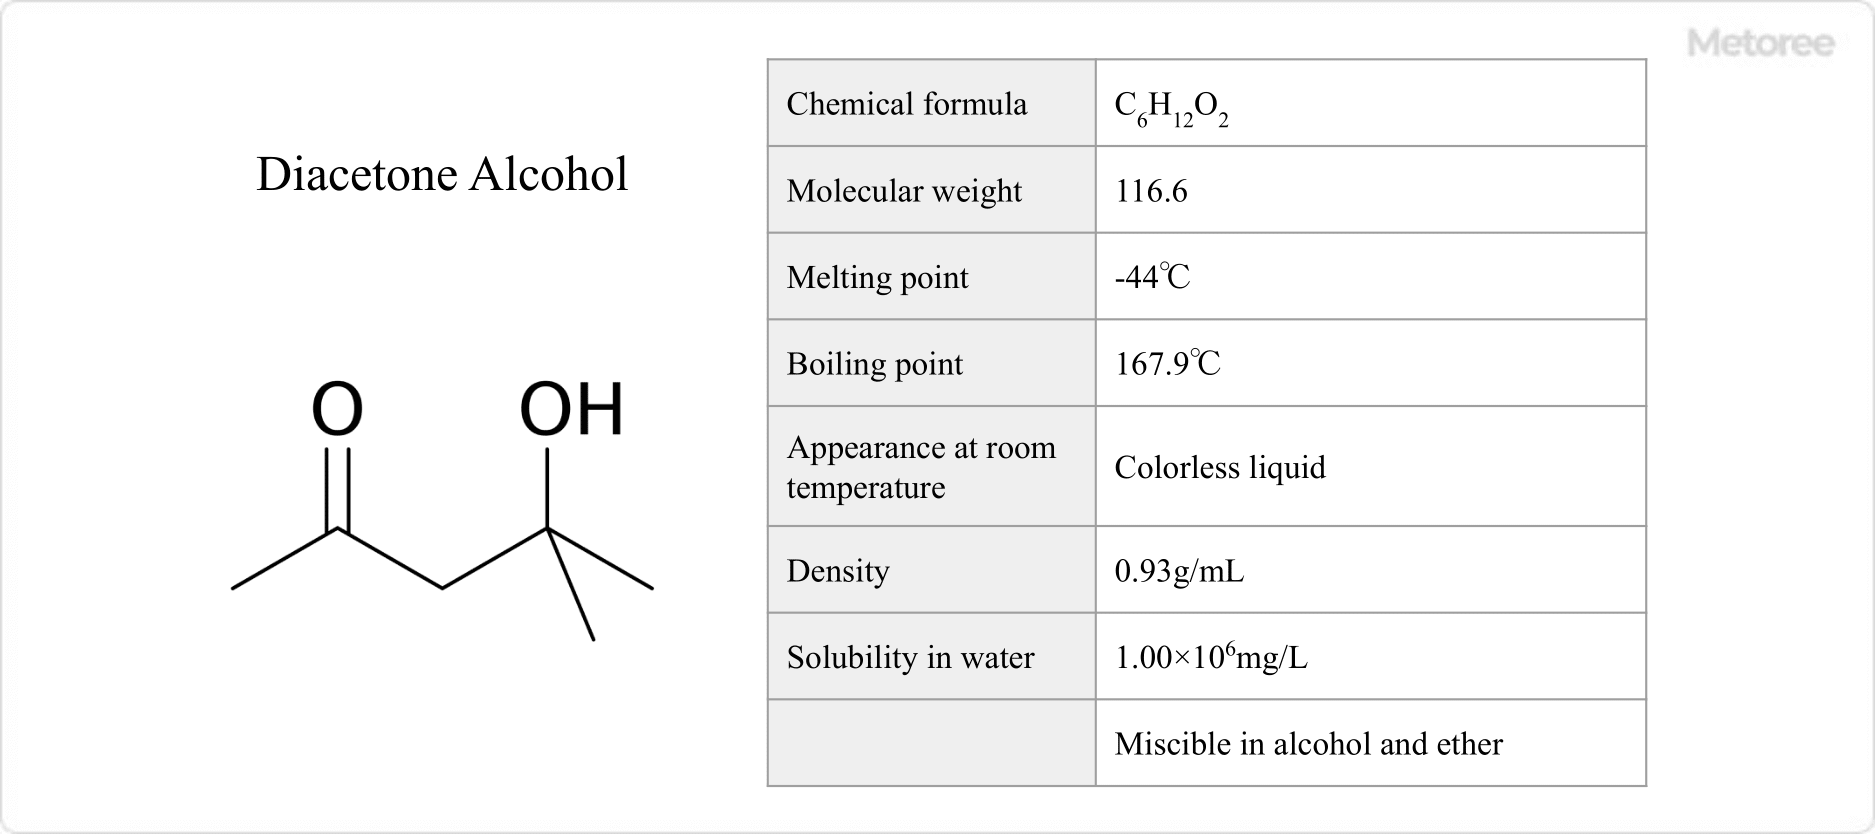 Figure 1. Basic Information on Diacetone Alcohol